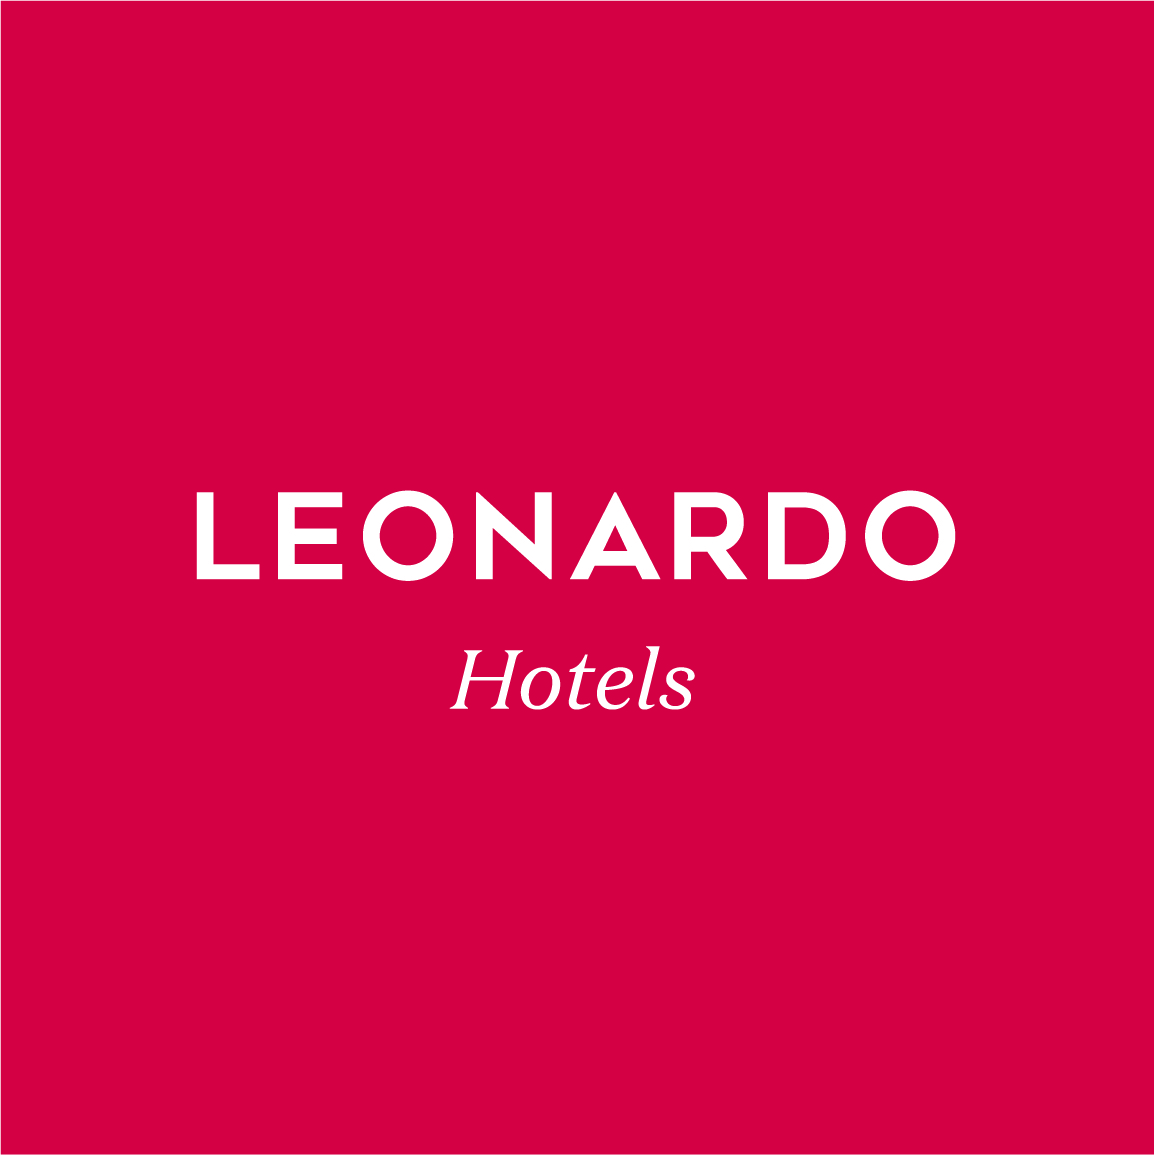 Leonardo Hotels - Everything Media Group